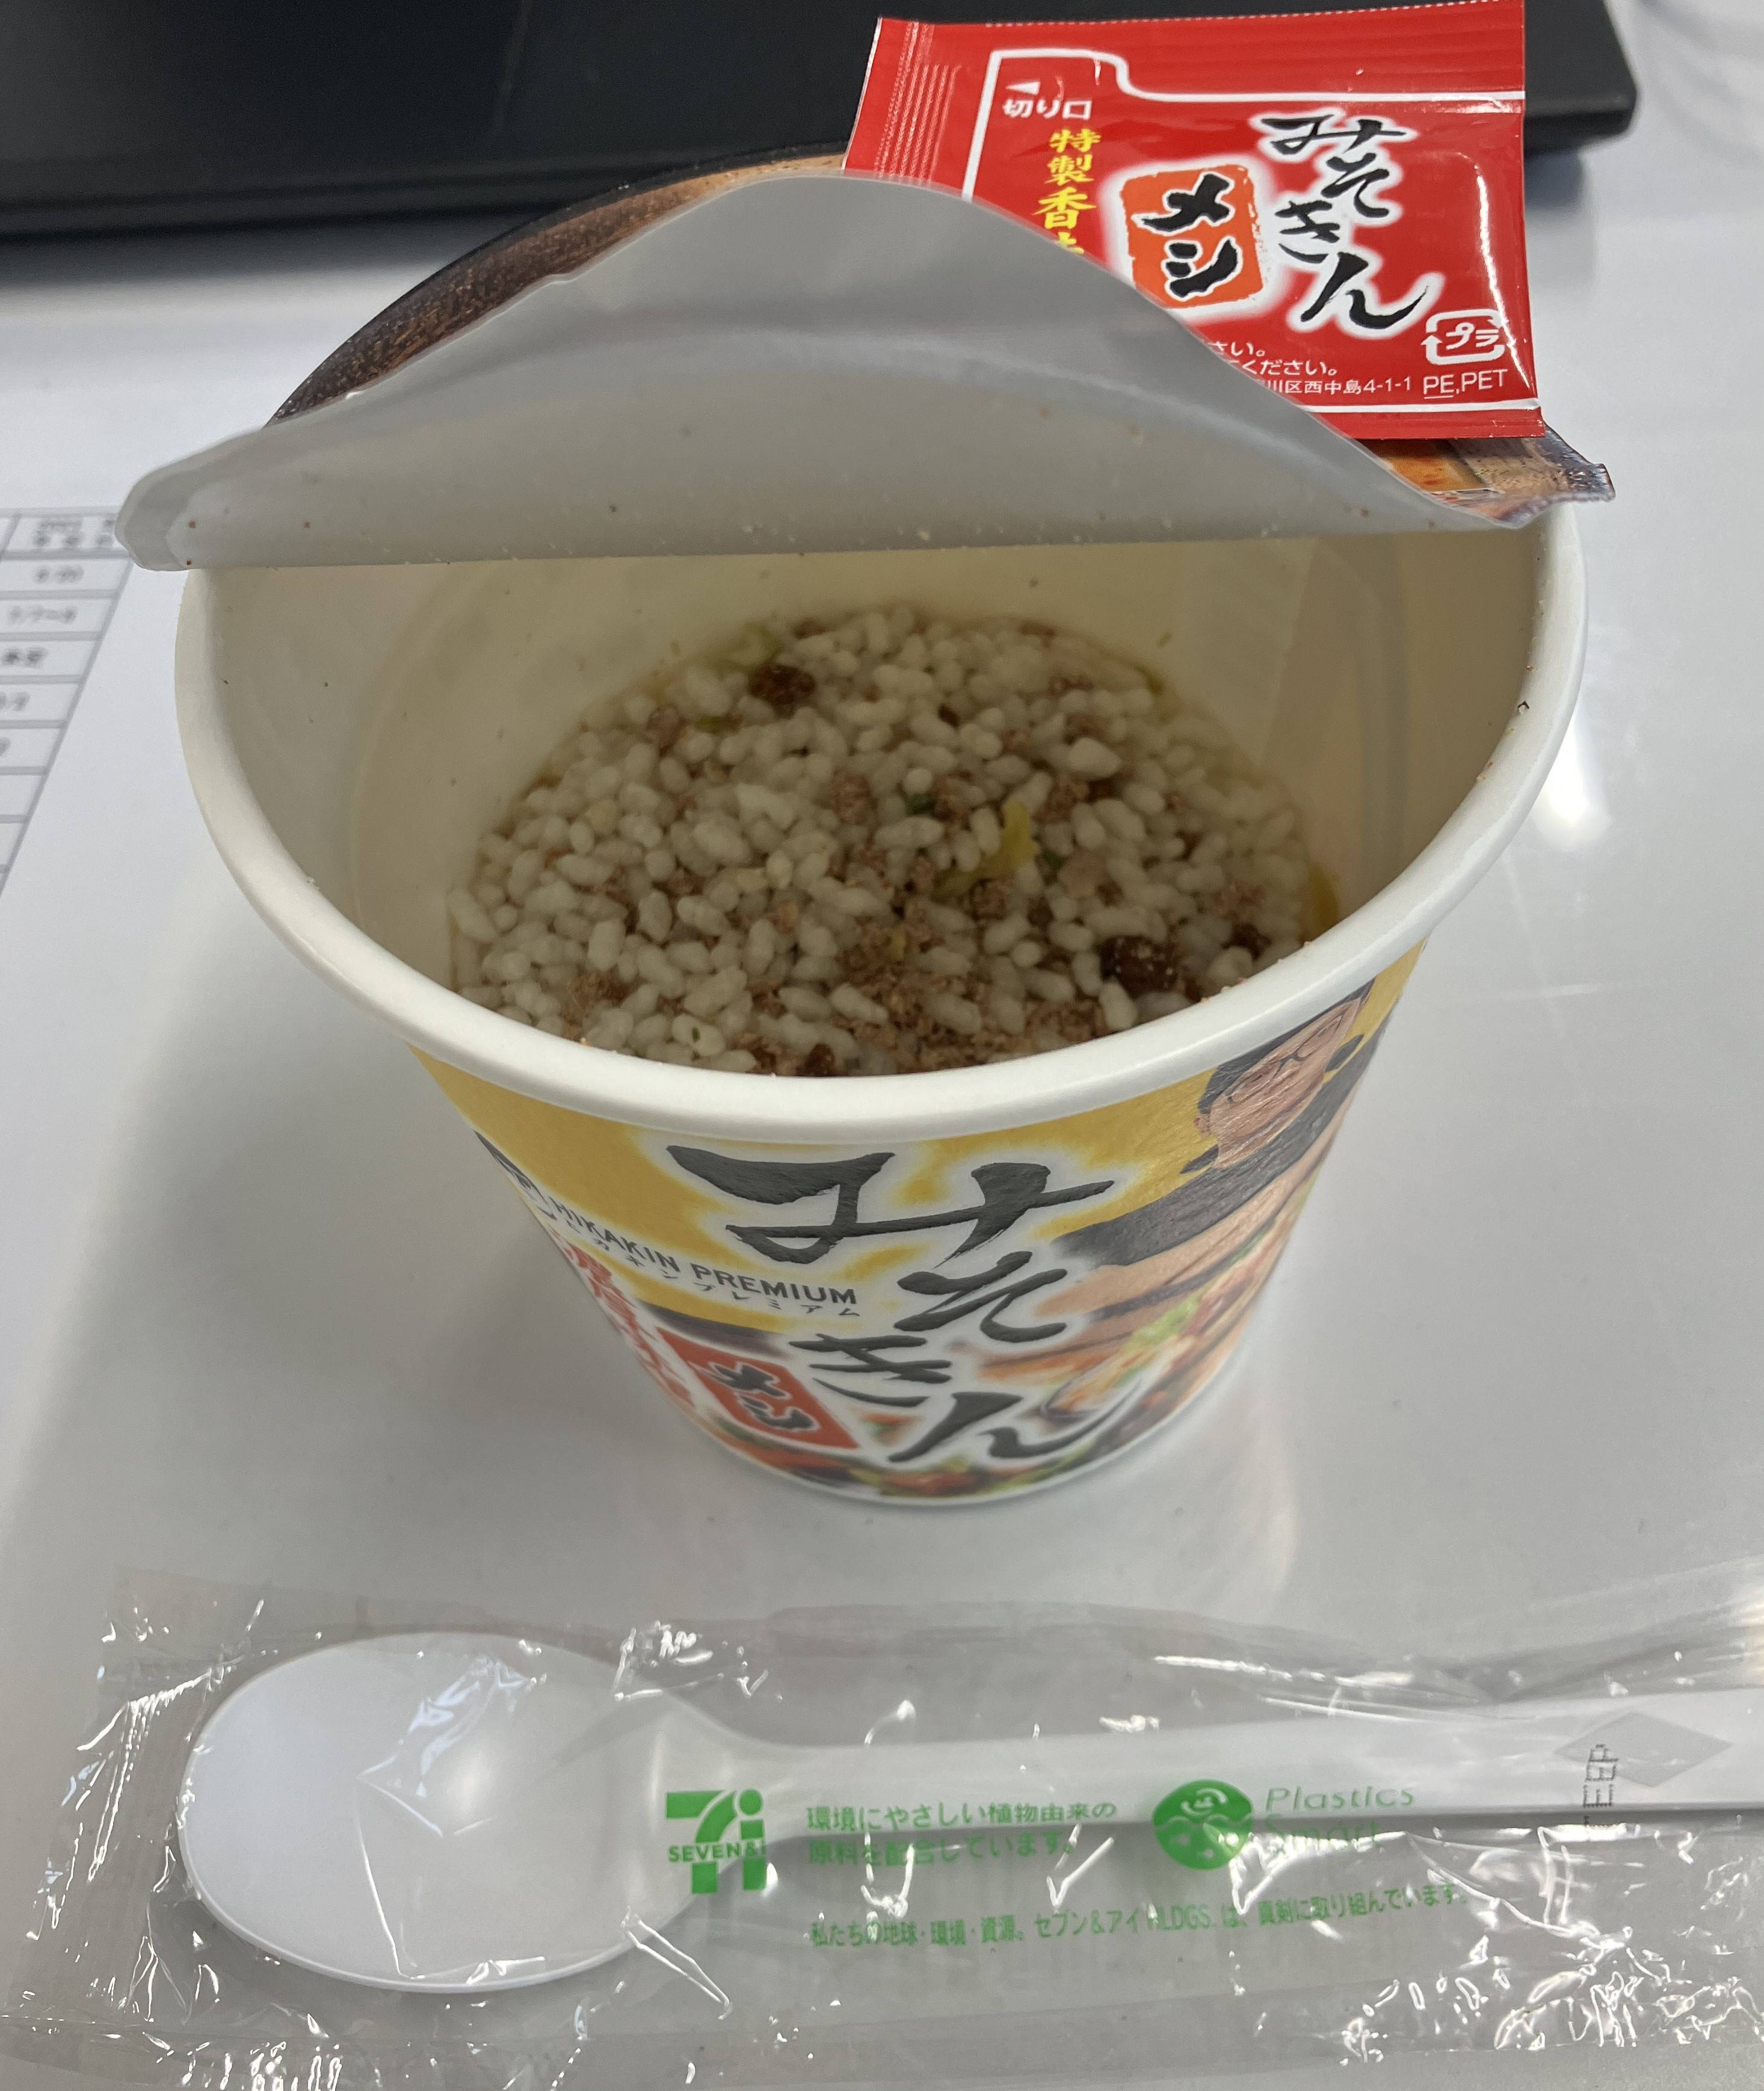 「みそきん」を食する😋 AKBT 土崎港店のブログ 写真1